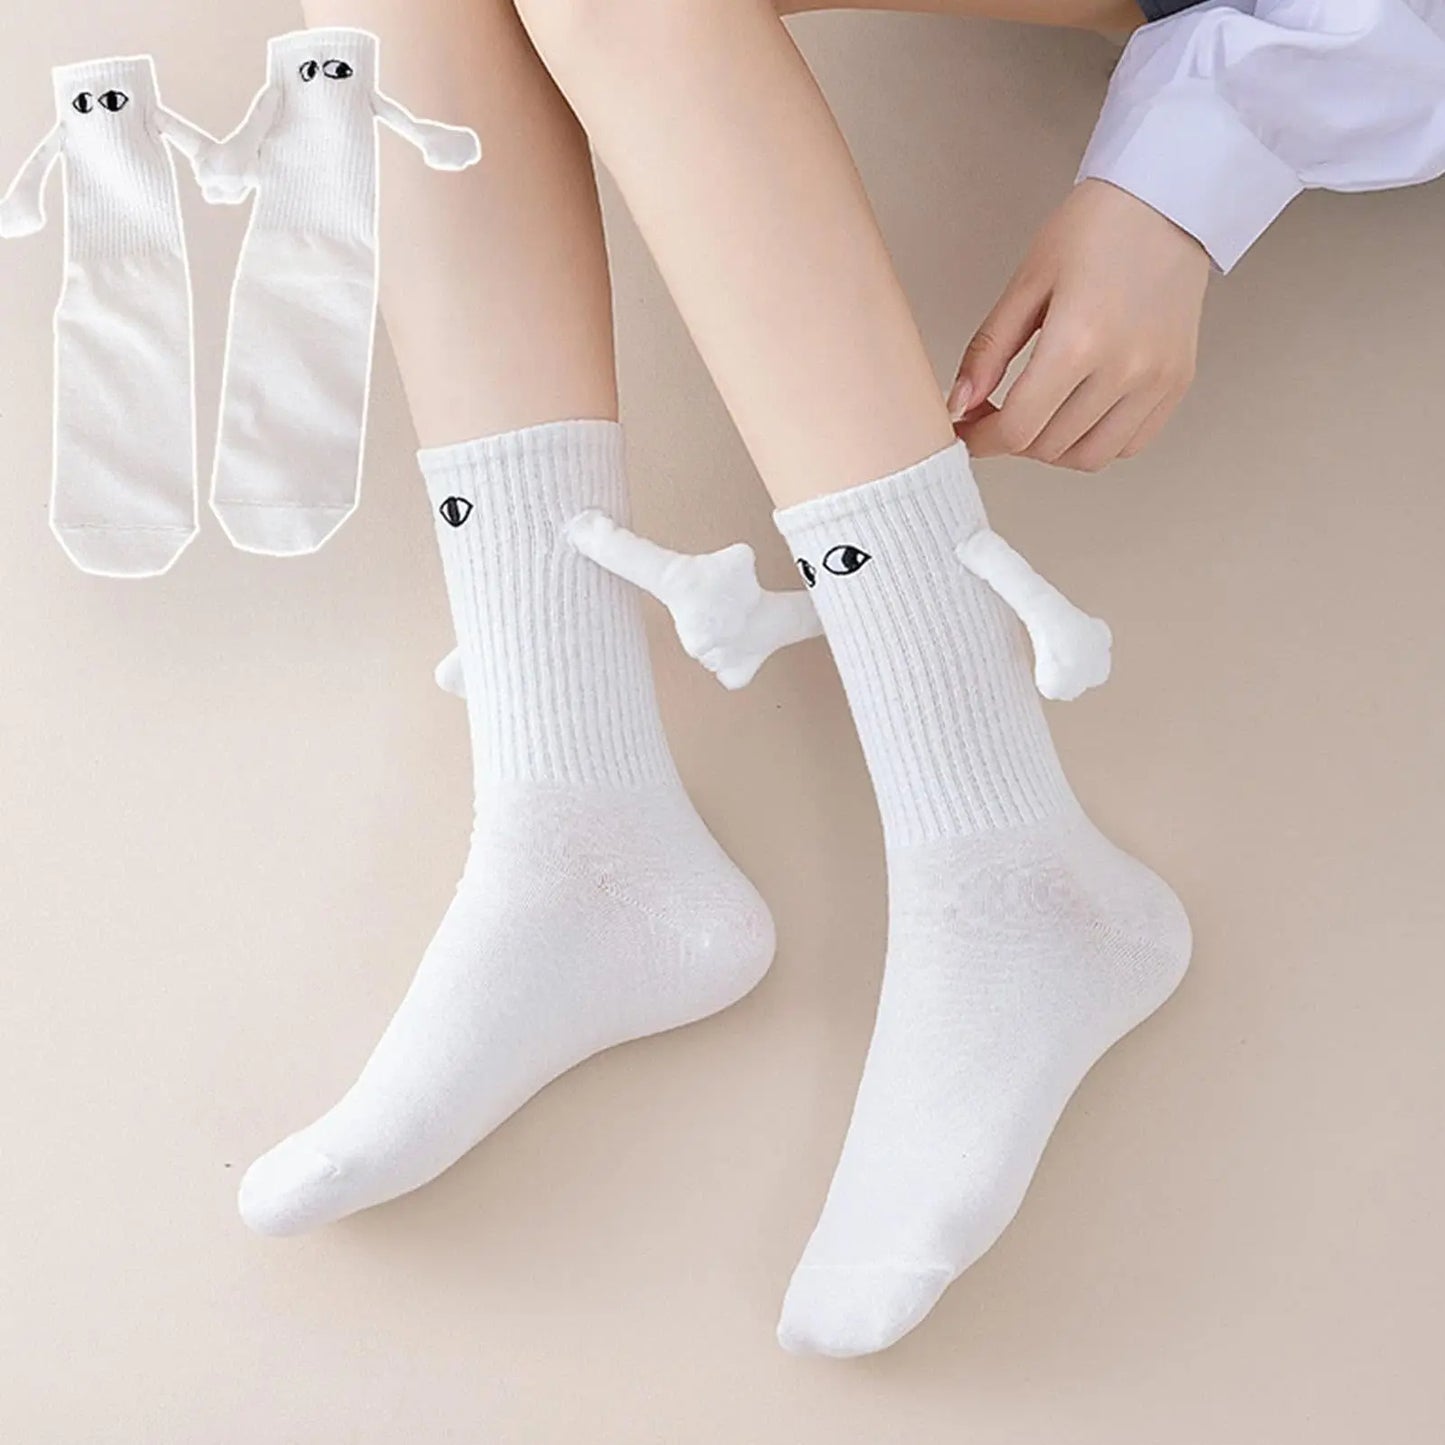 Handholding Socks for Couples